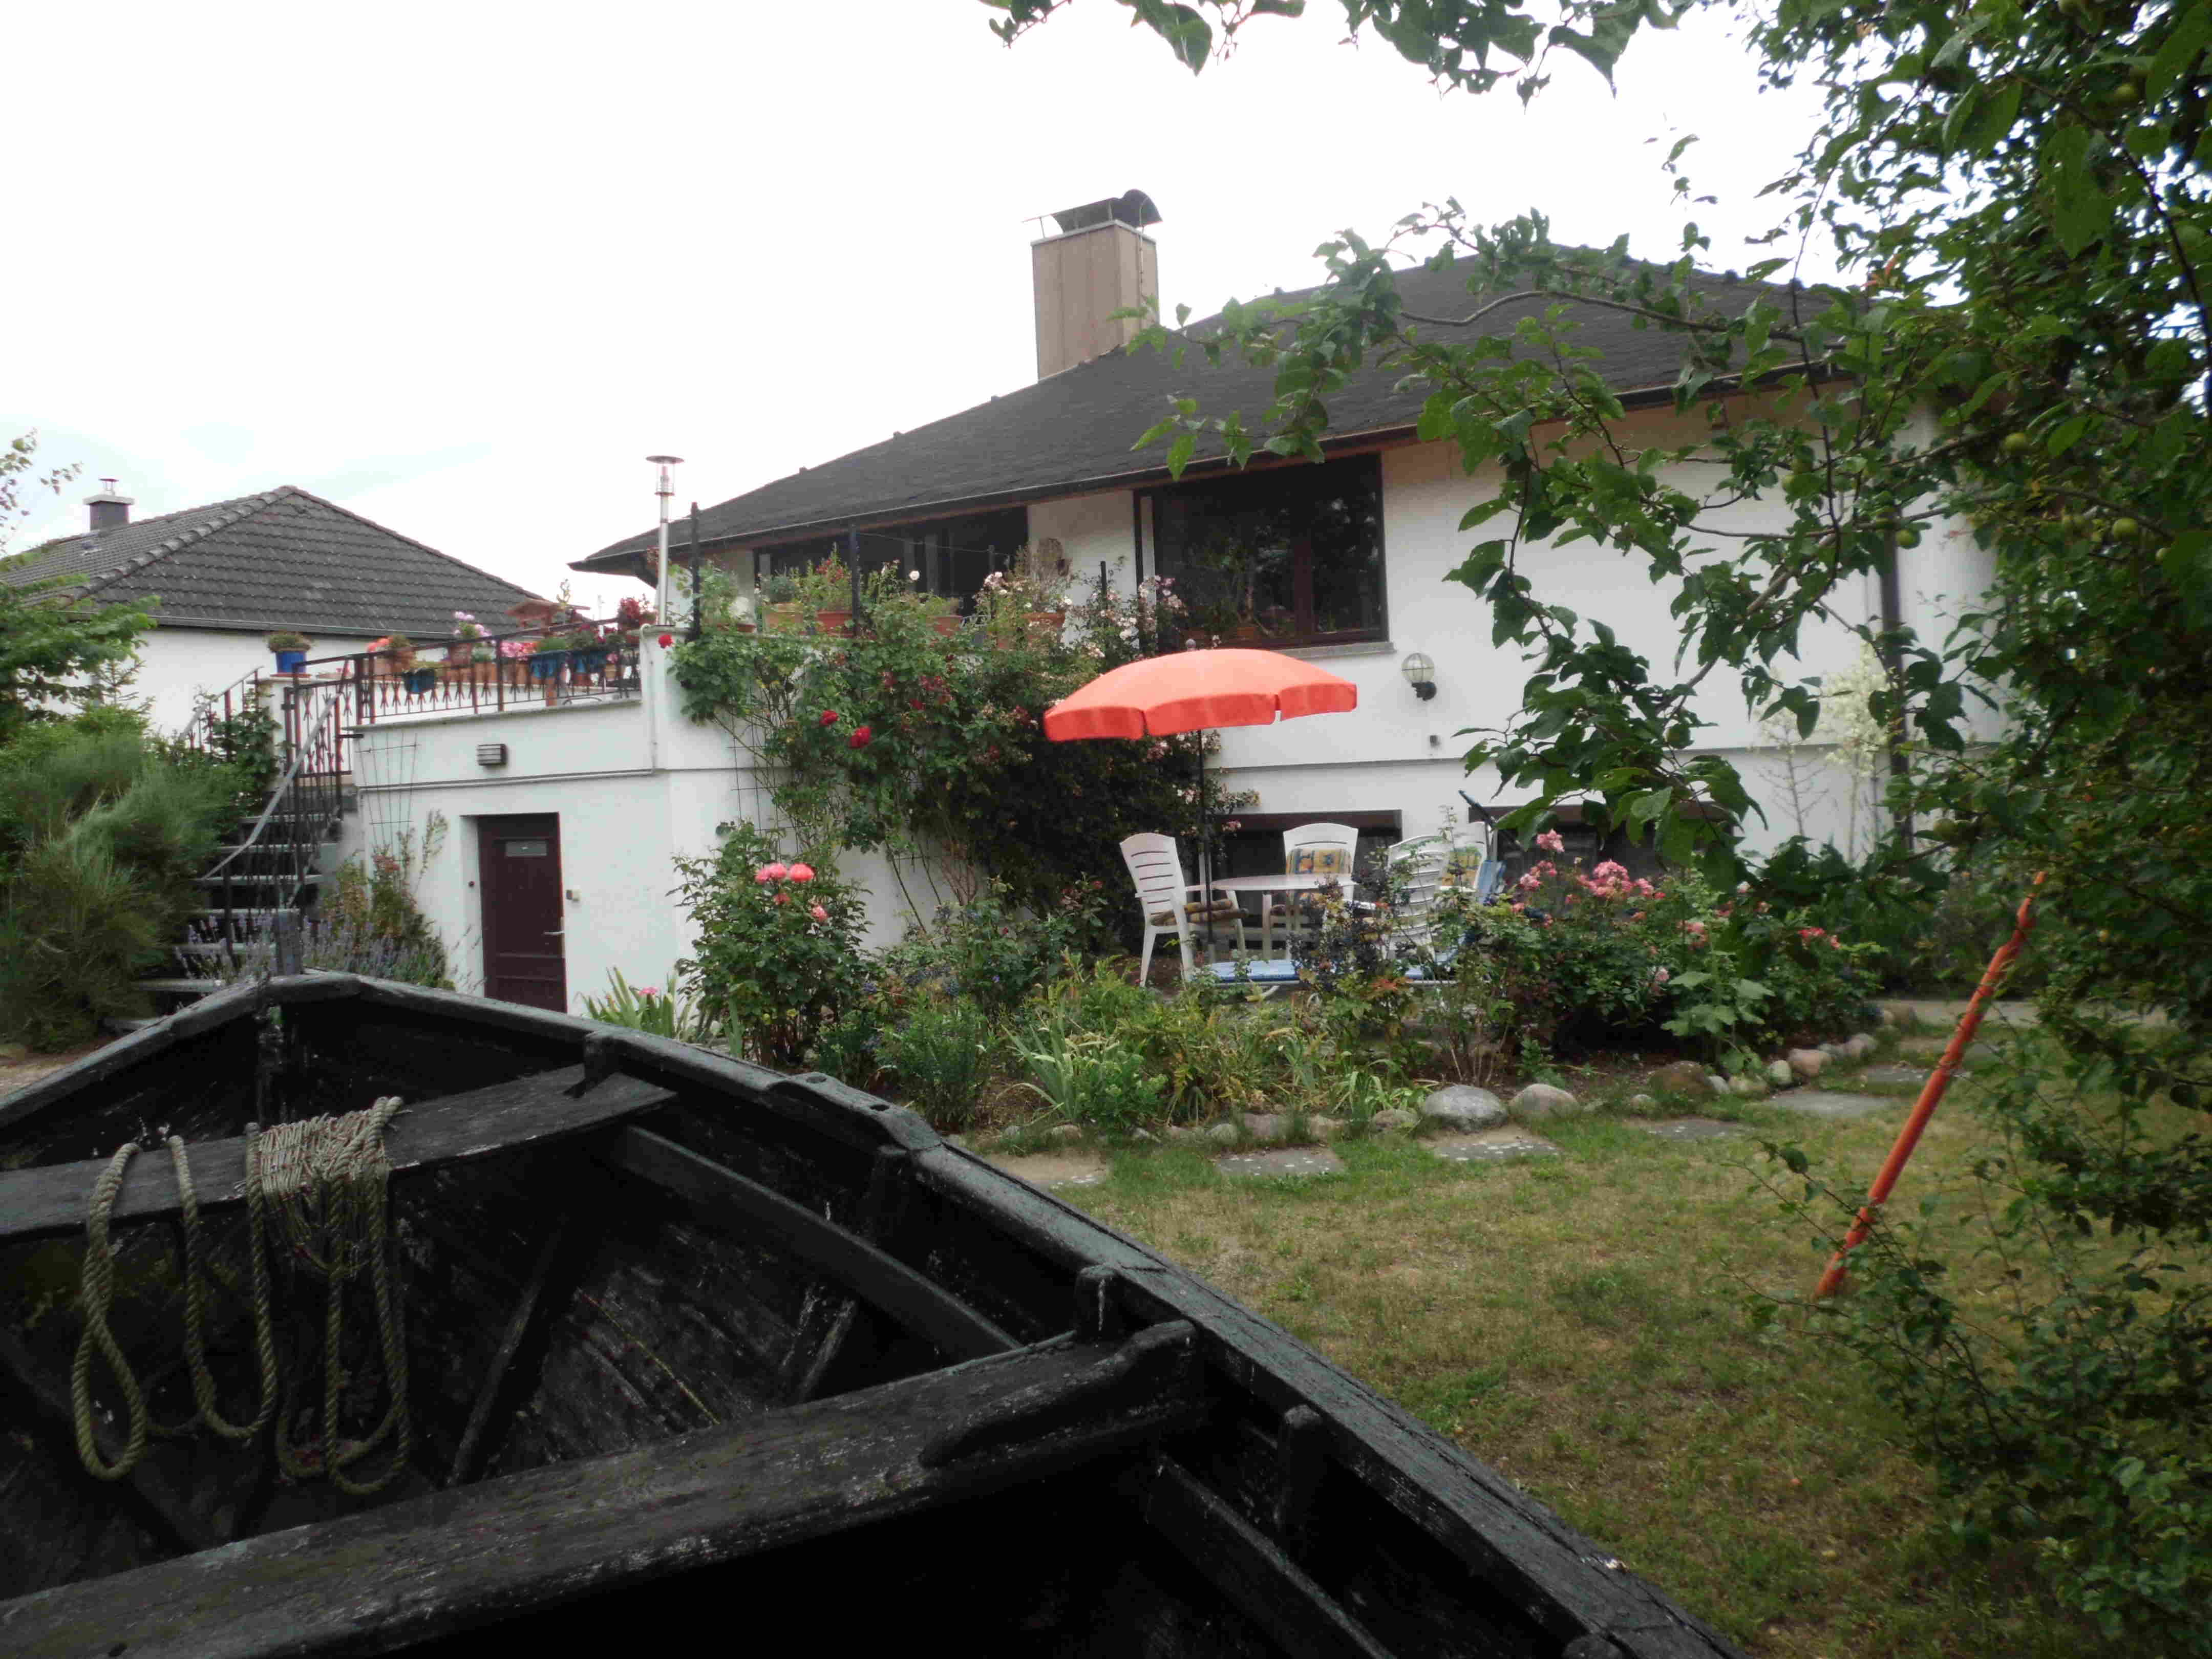 Haus Sedina mit Terrasse und Garten zum Erholen. Im Vordergrund ein altes Fischerboot, rechts die Schaukel für die Kinder.